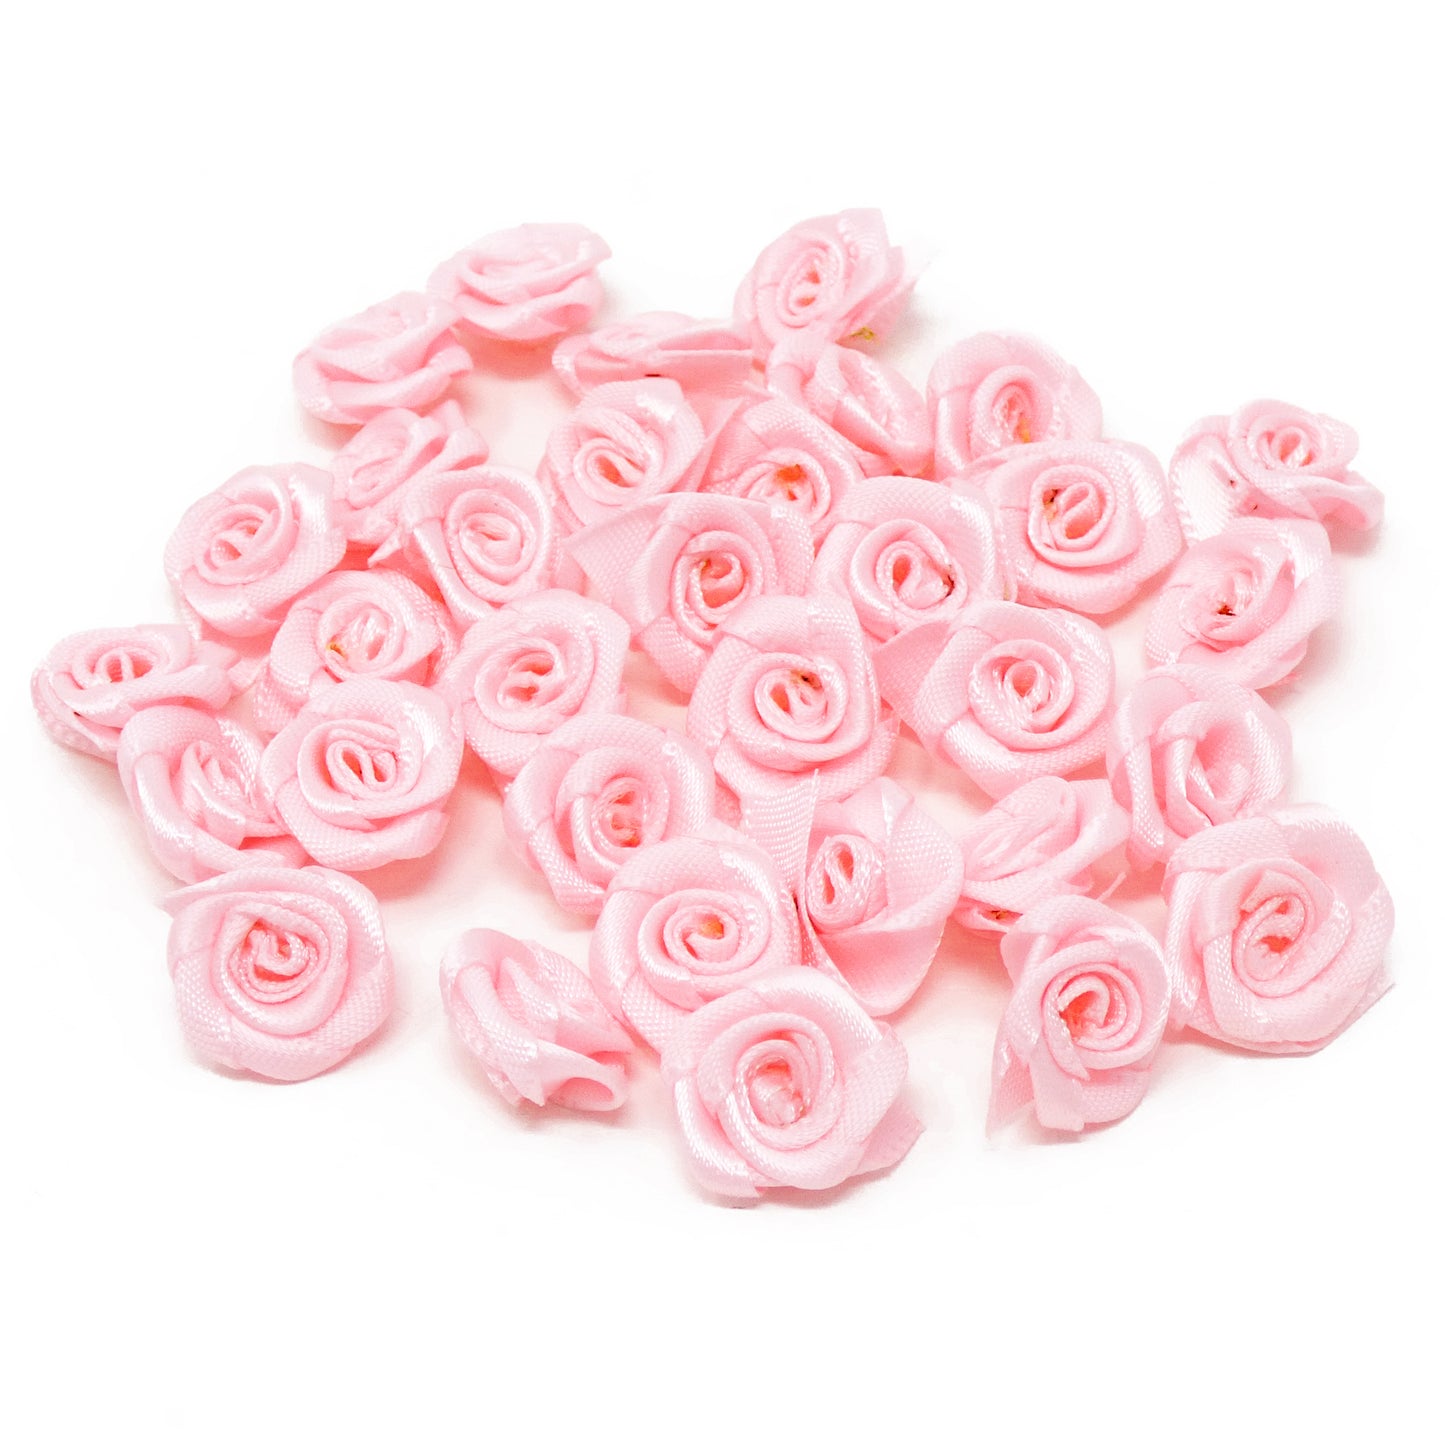 Light Pink 15mm Miniature Satin Ribbon Roses